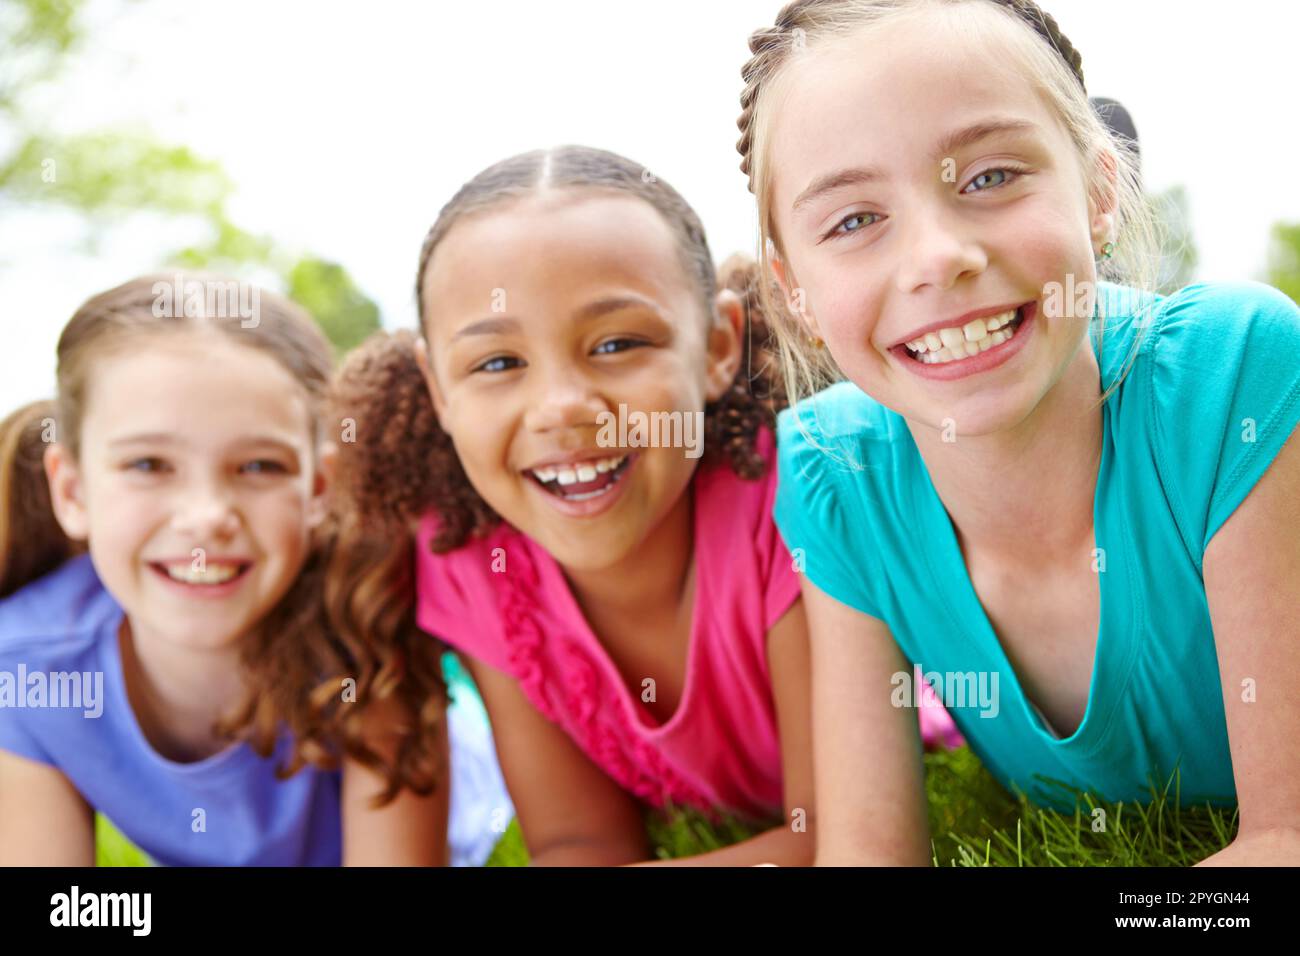 Divertirsi insieme. Tre ragazze multietniche sdraiate sull'erba in un parco sorridendo alla macchina fotografica. Foto Stock